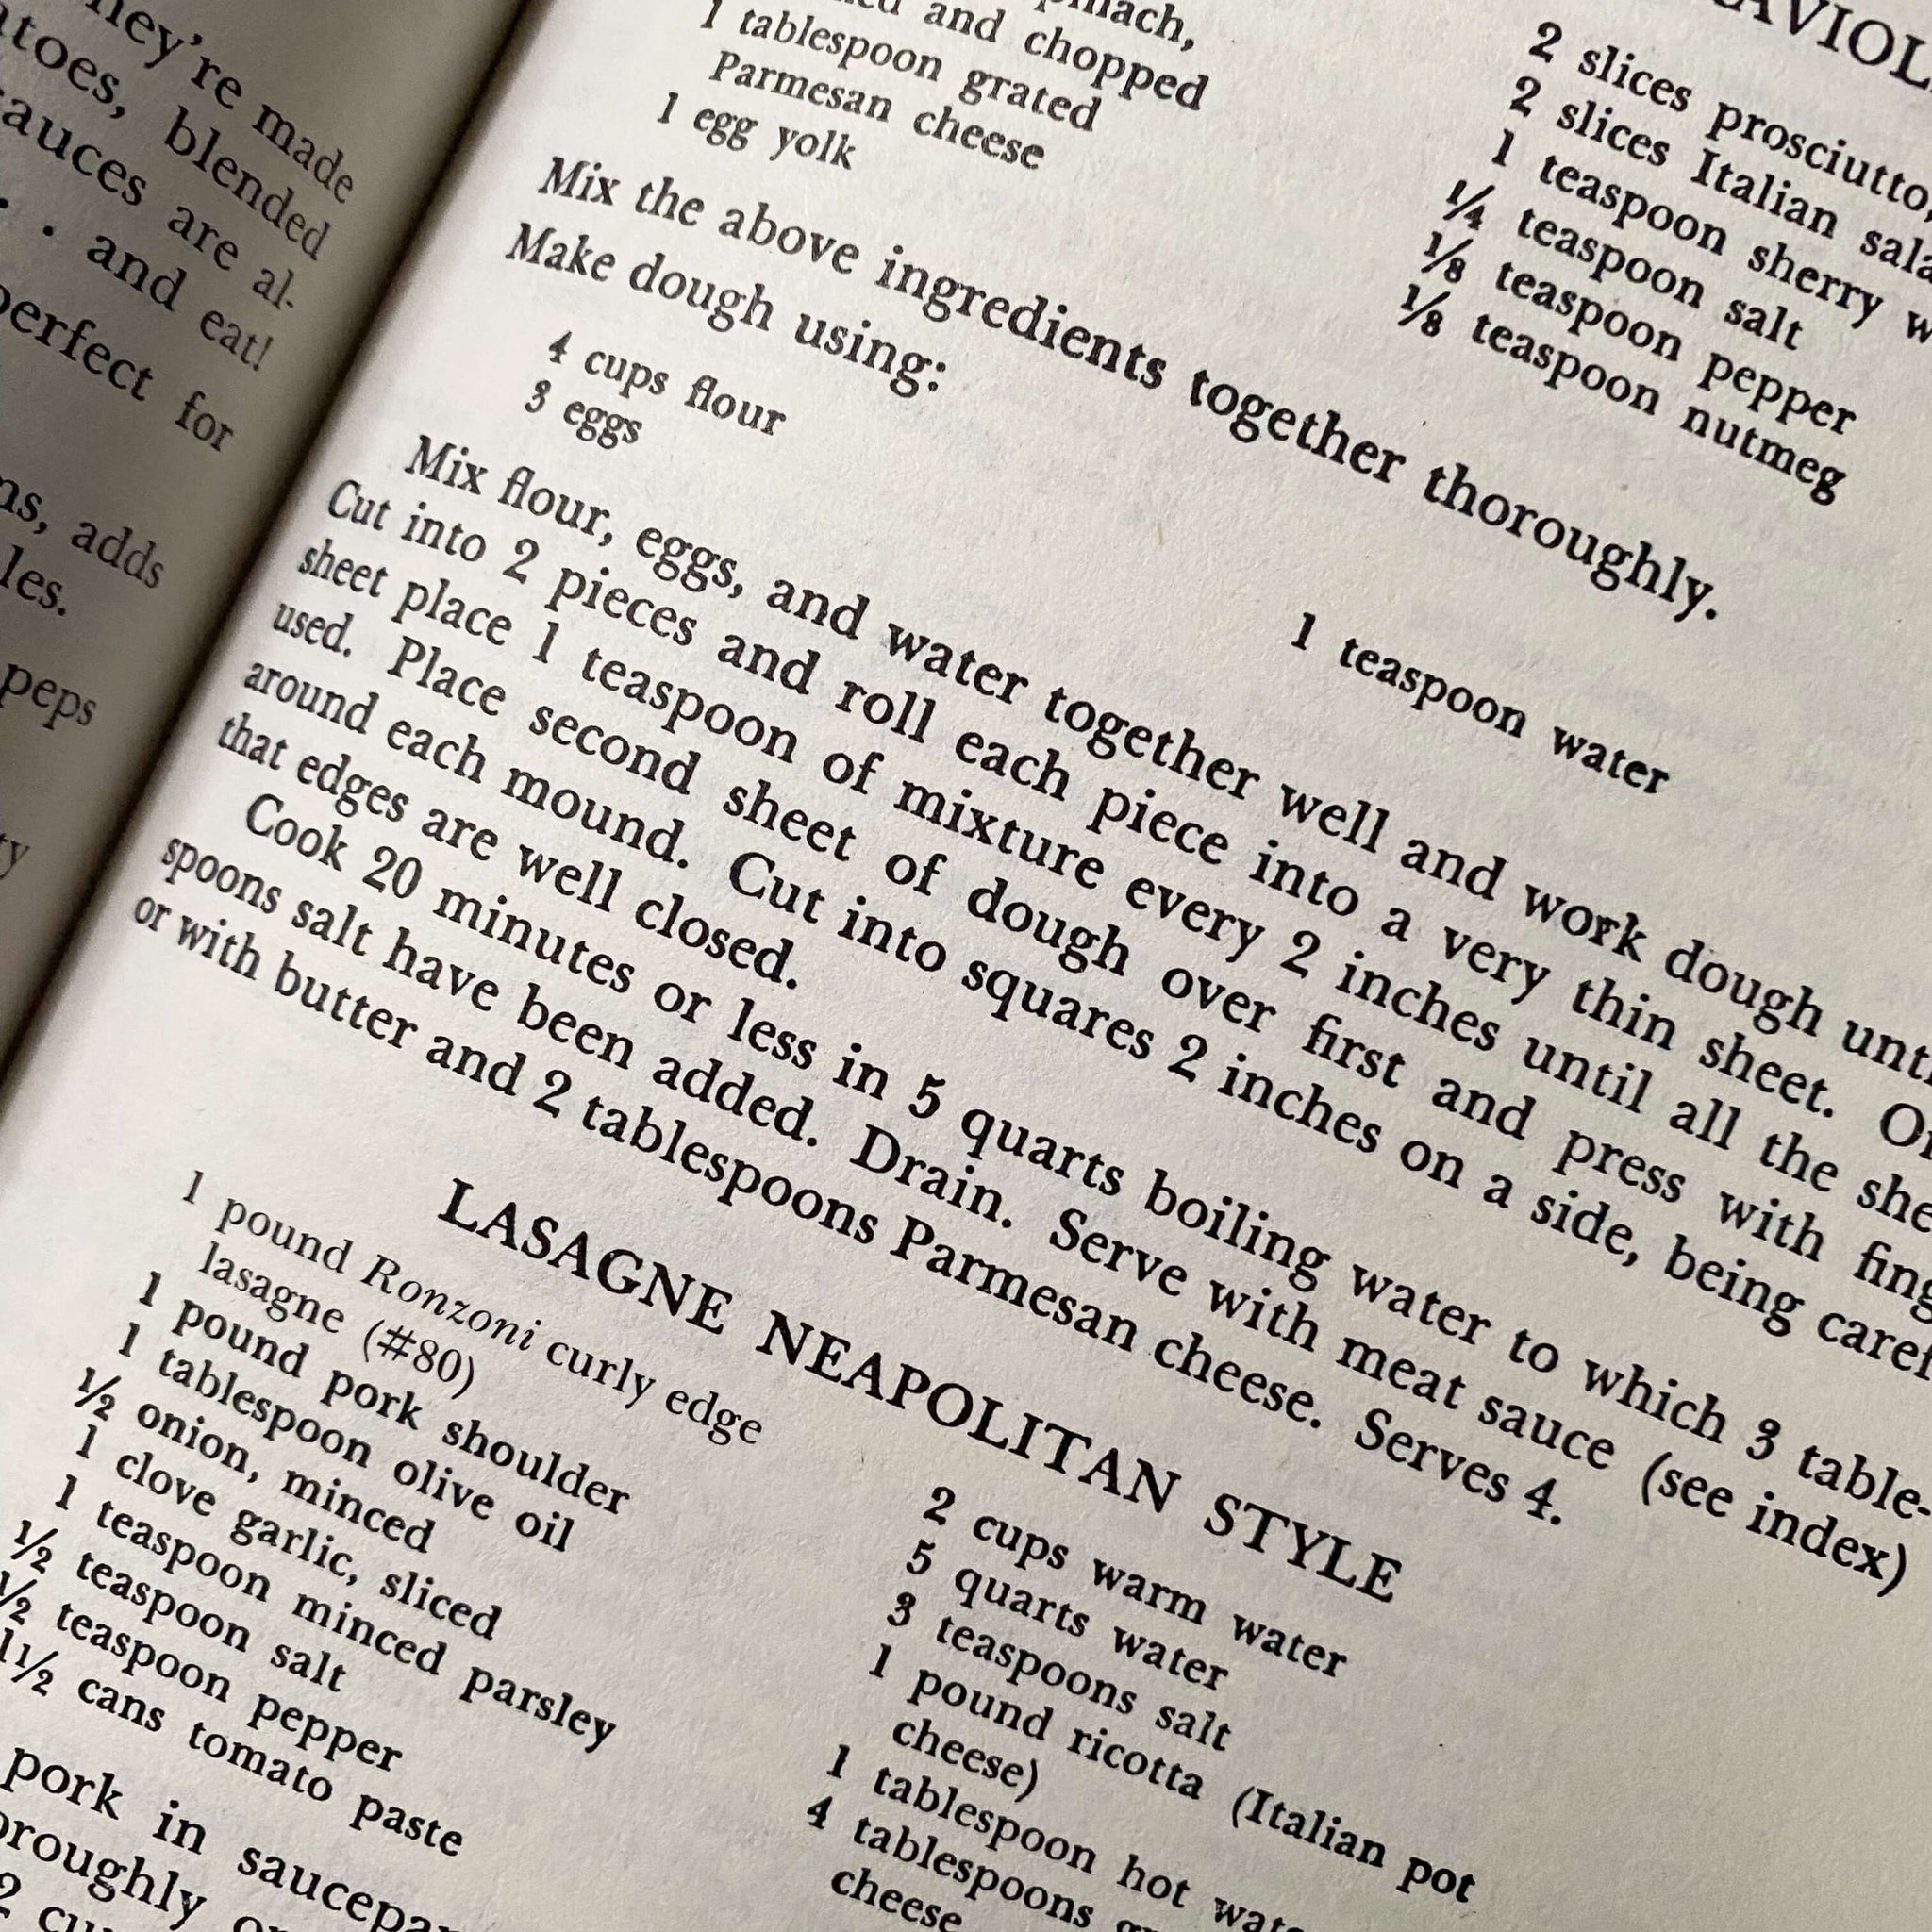 The Talisman Italian Cook Book by Ada Boni - 1974 Ronzoni Macaroni Edition